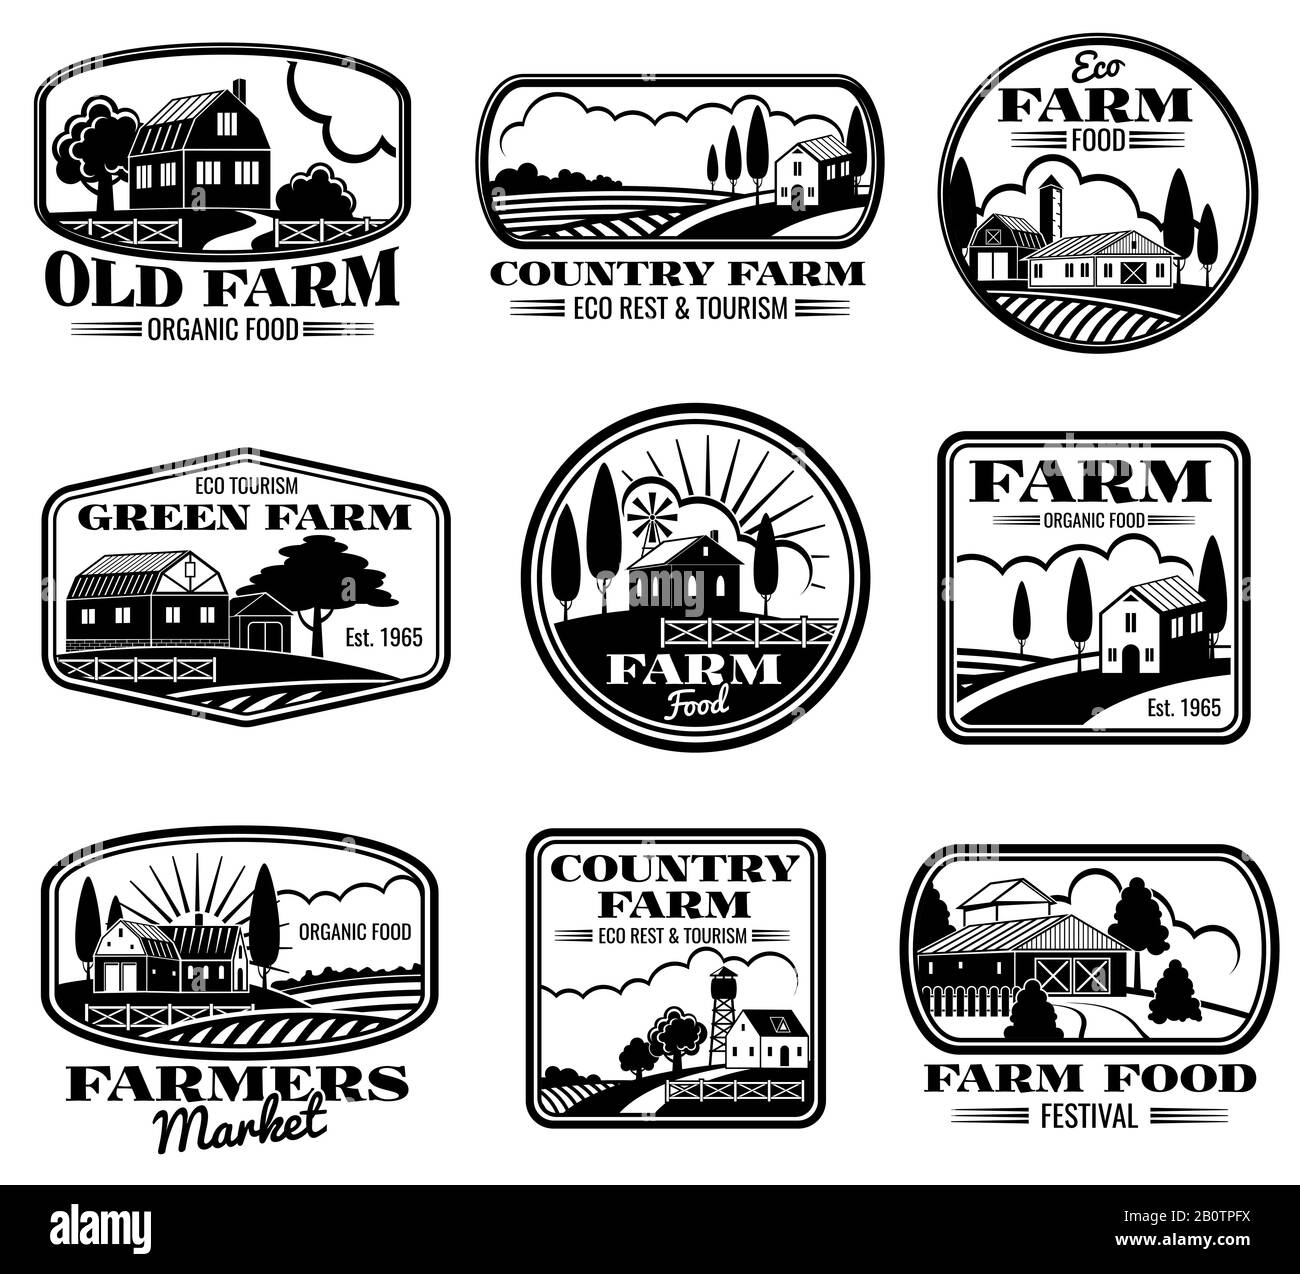 Vektor-Logos und Beschriftungen für Vintage-Farm-Marketing. Abbildung der Produktion von Öko Farm und Land Farm Stock Vektor